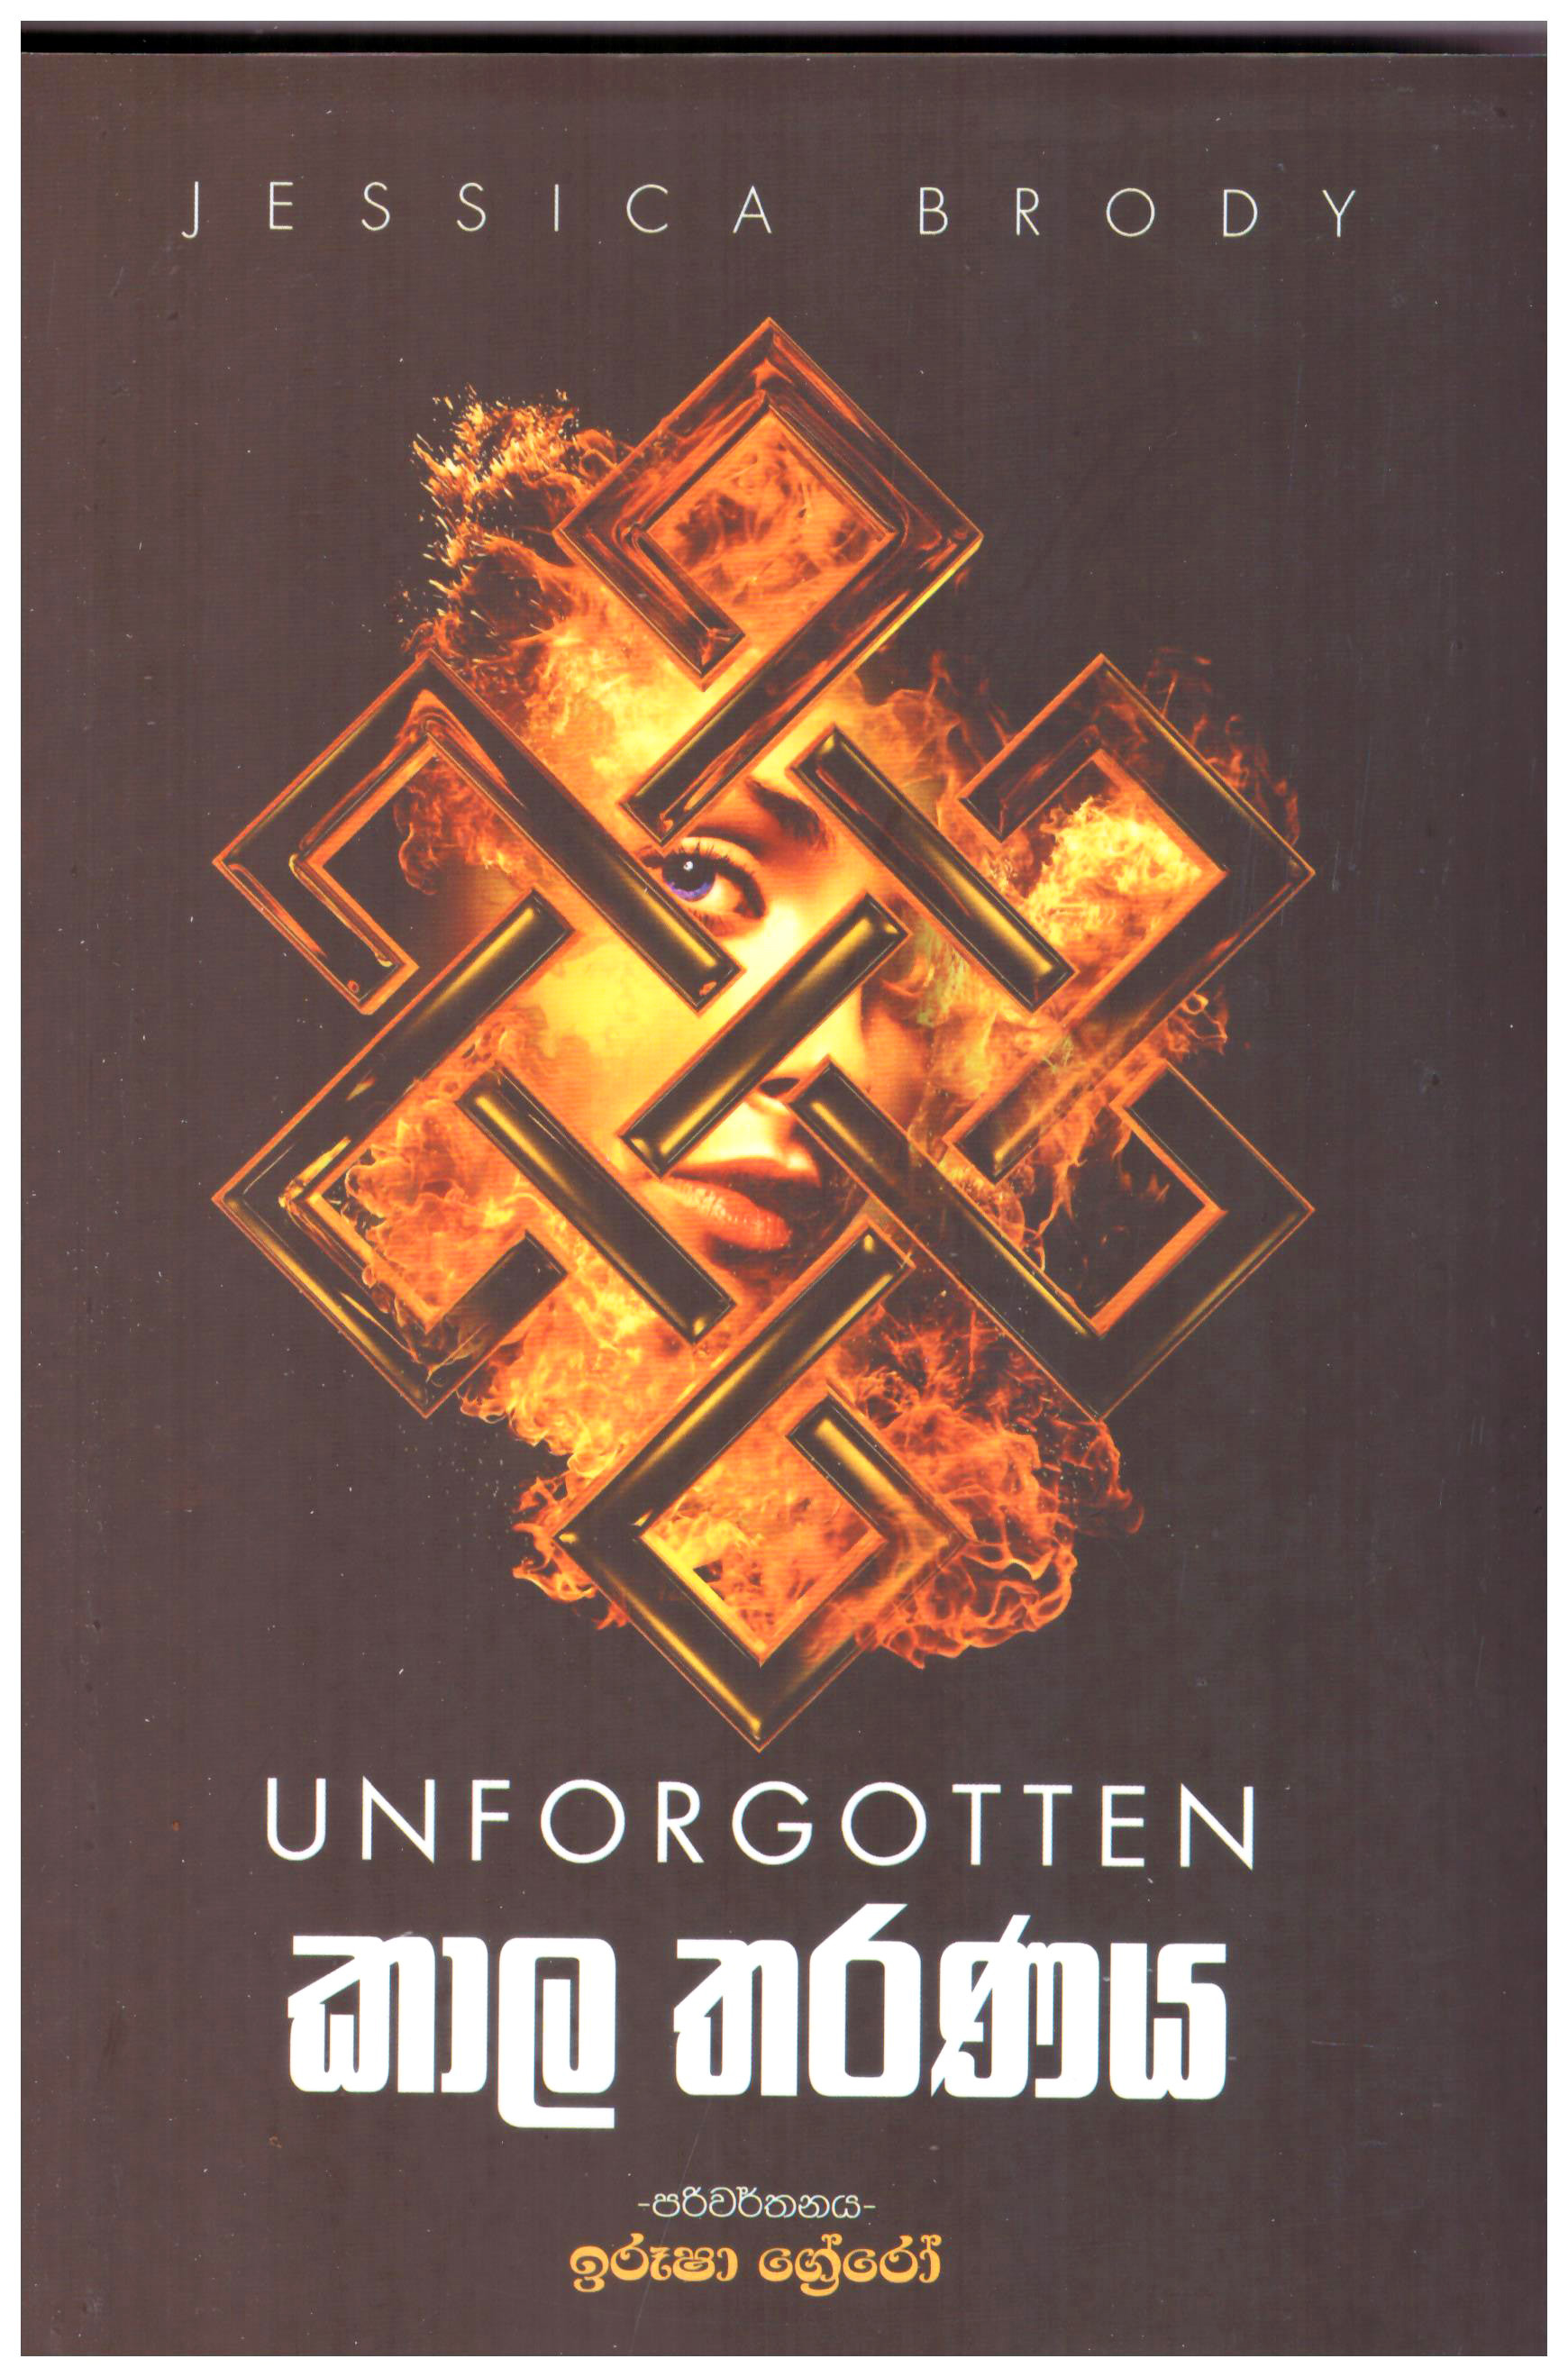 Kala Tharanaya - Translation of Unforgotten By Jessica Brody